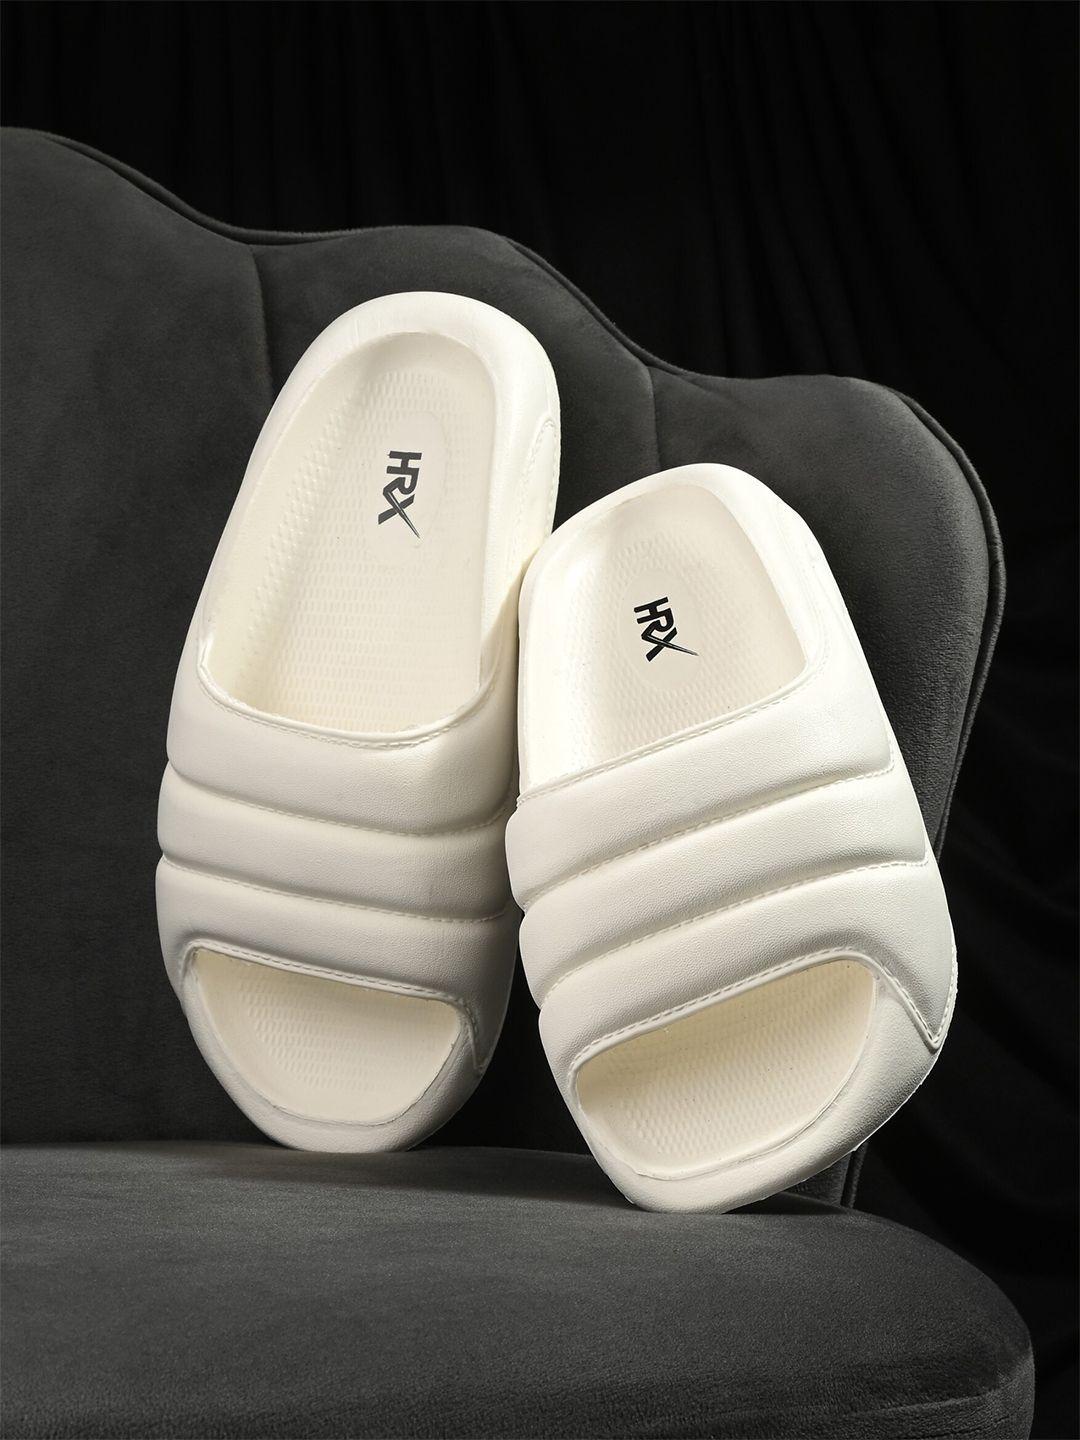 hrx by hrithik roshan women white textured rubber sliders